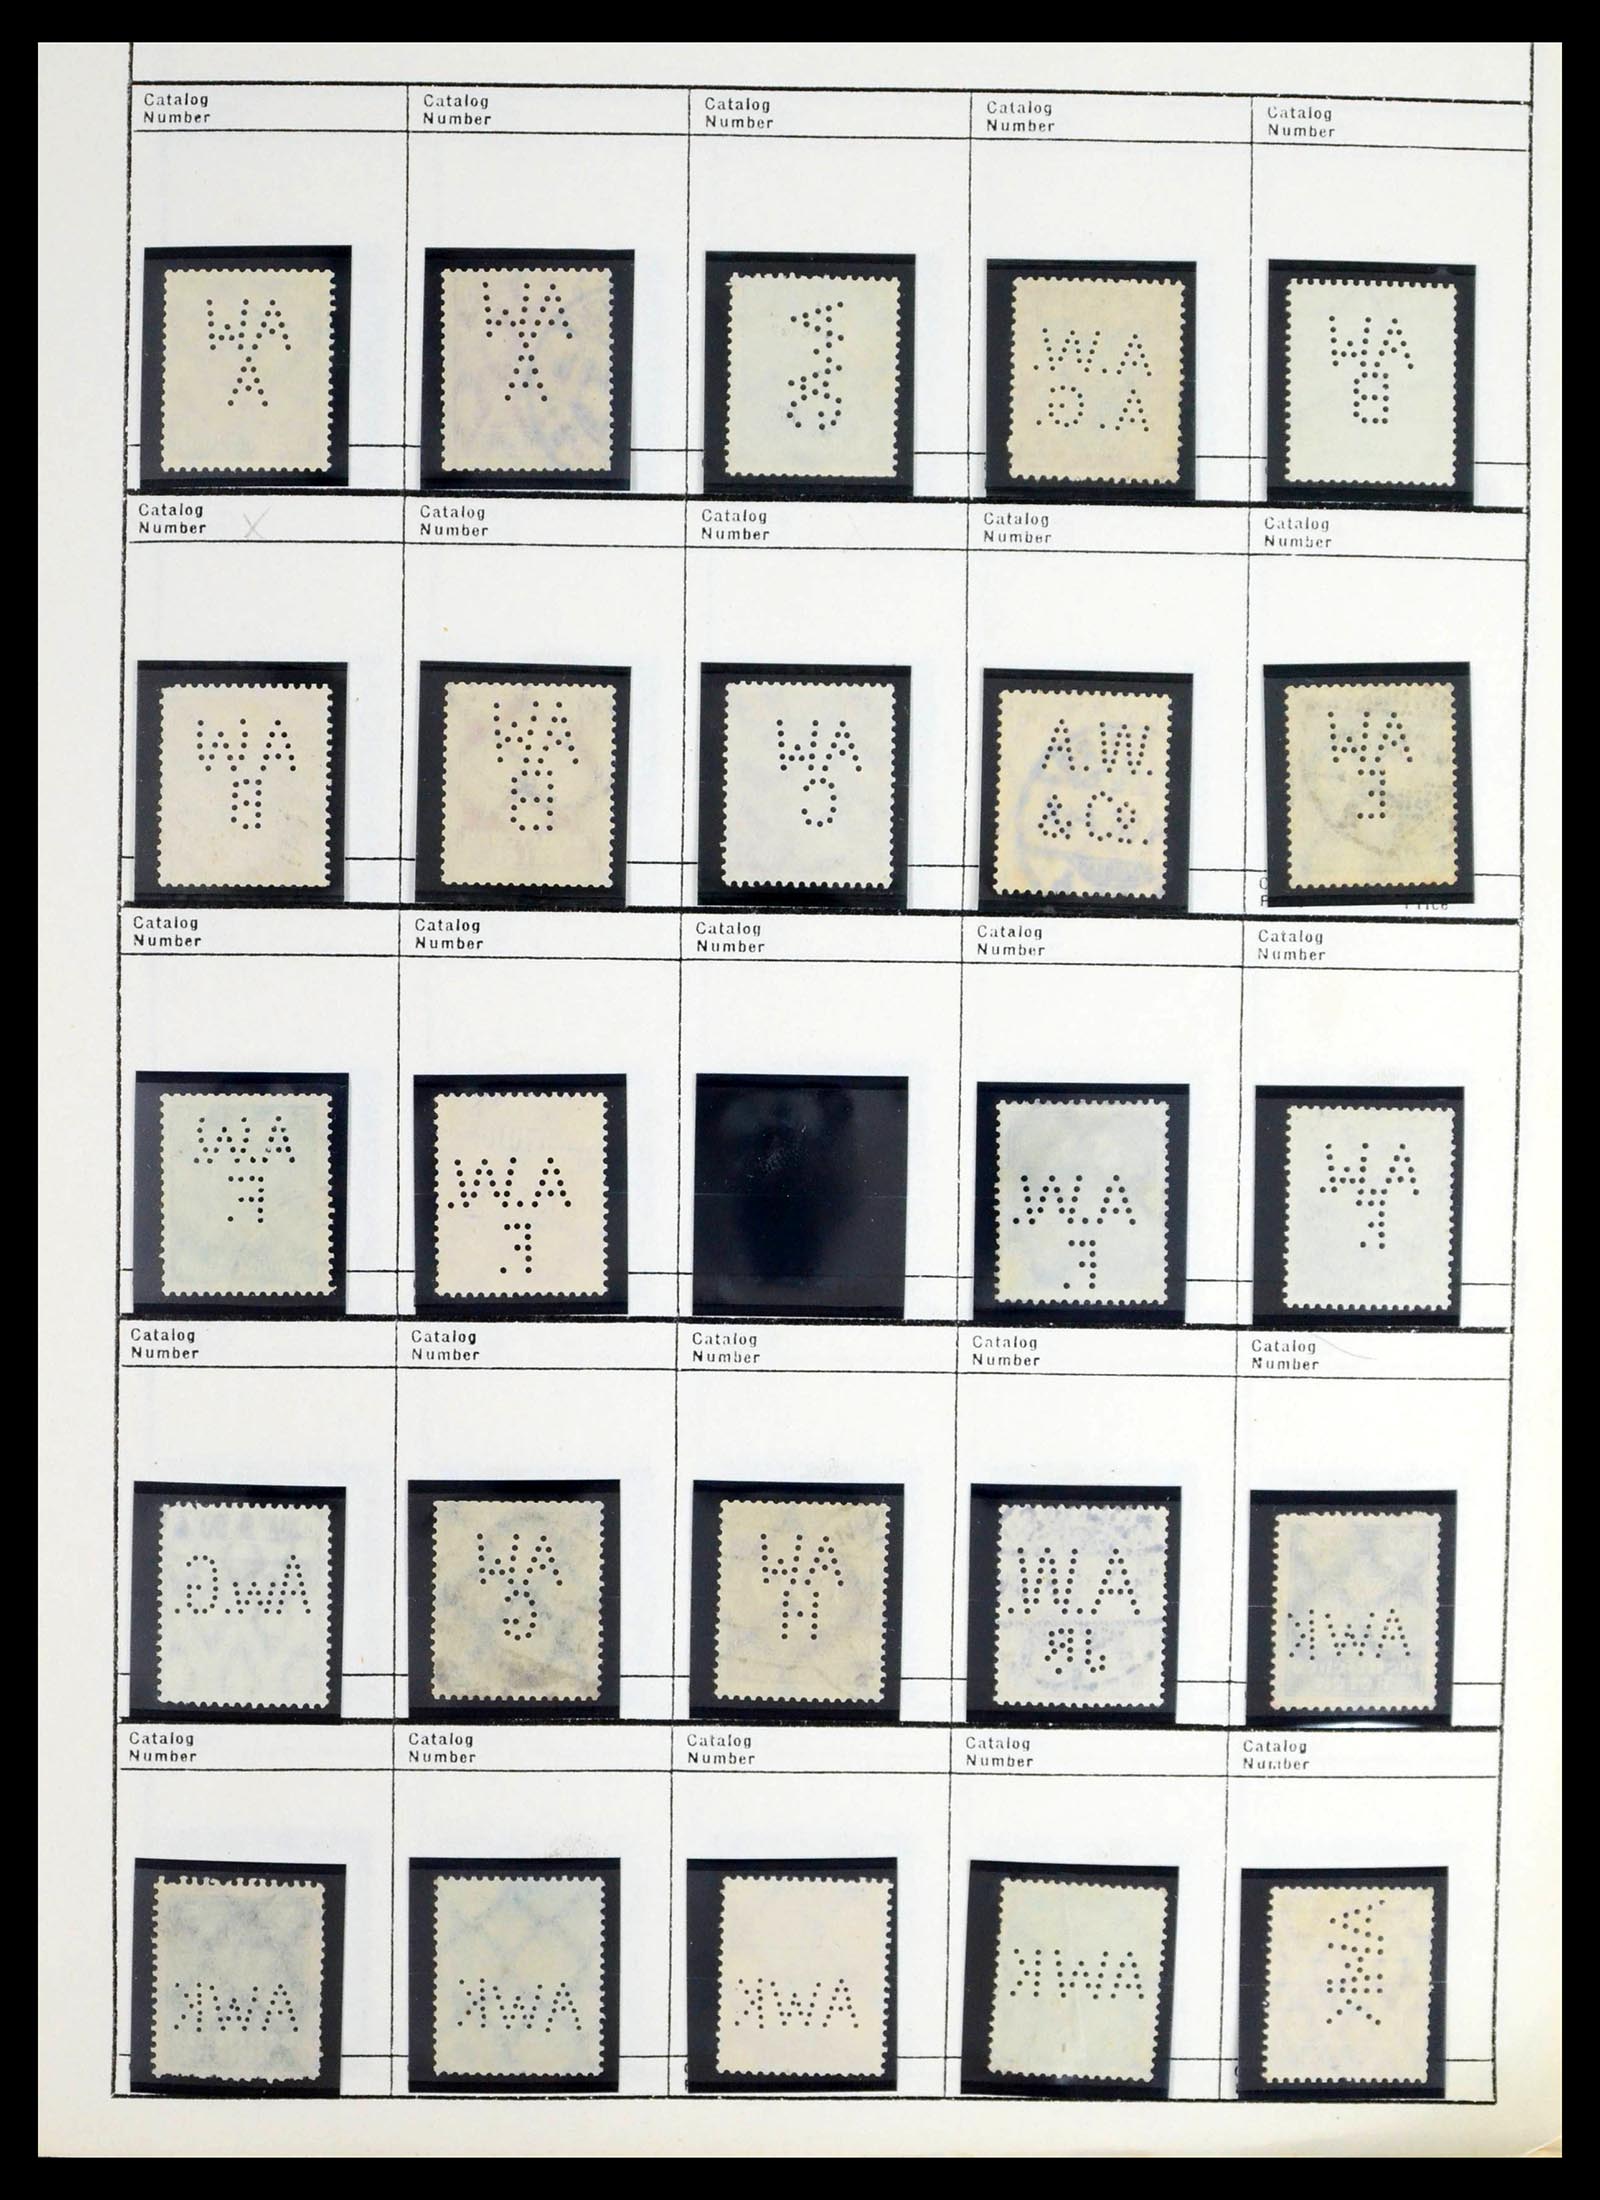 39480 0048 - Stamp collection 39480 German Reich perfins 1880-1955.